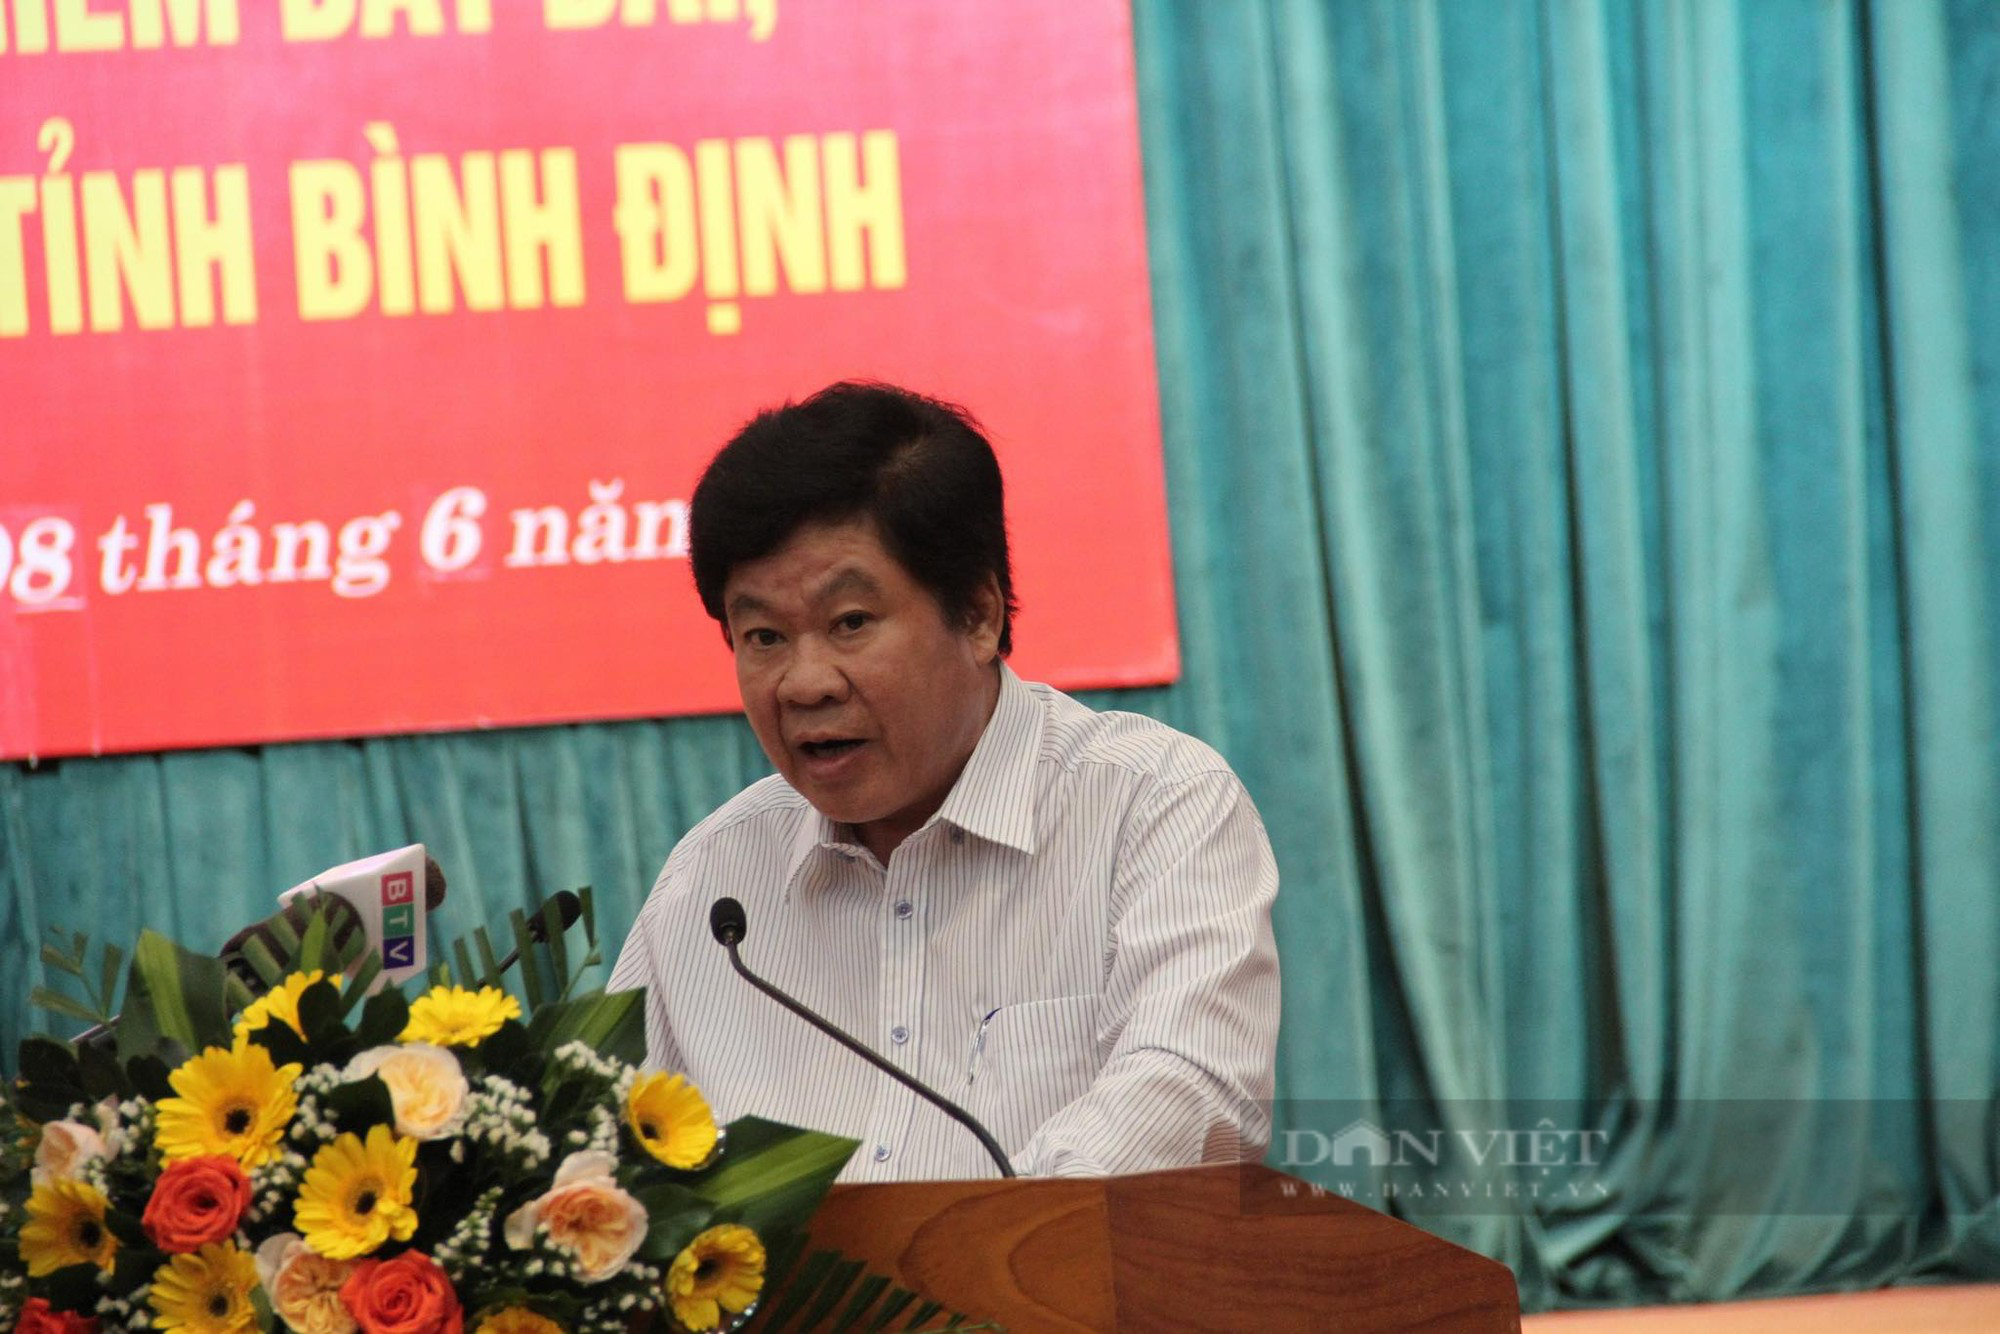 Chủ tịch Bình Định: 'Tôi vừa sửa nhà thuê ở Quy Nhơn, đã có người Đội trật tự đến hỏi' - Ảnh 1.